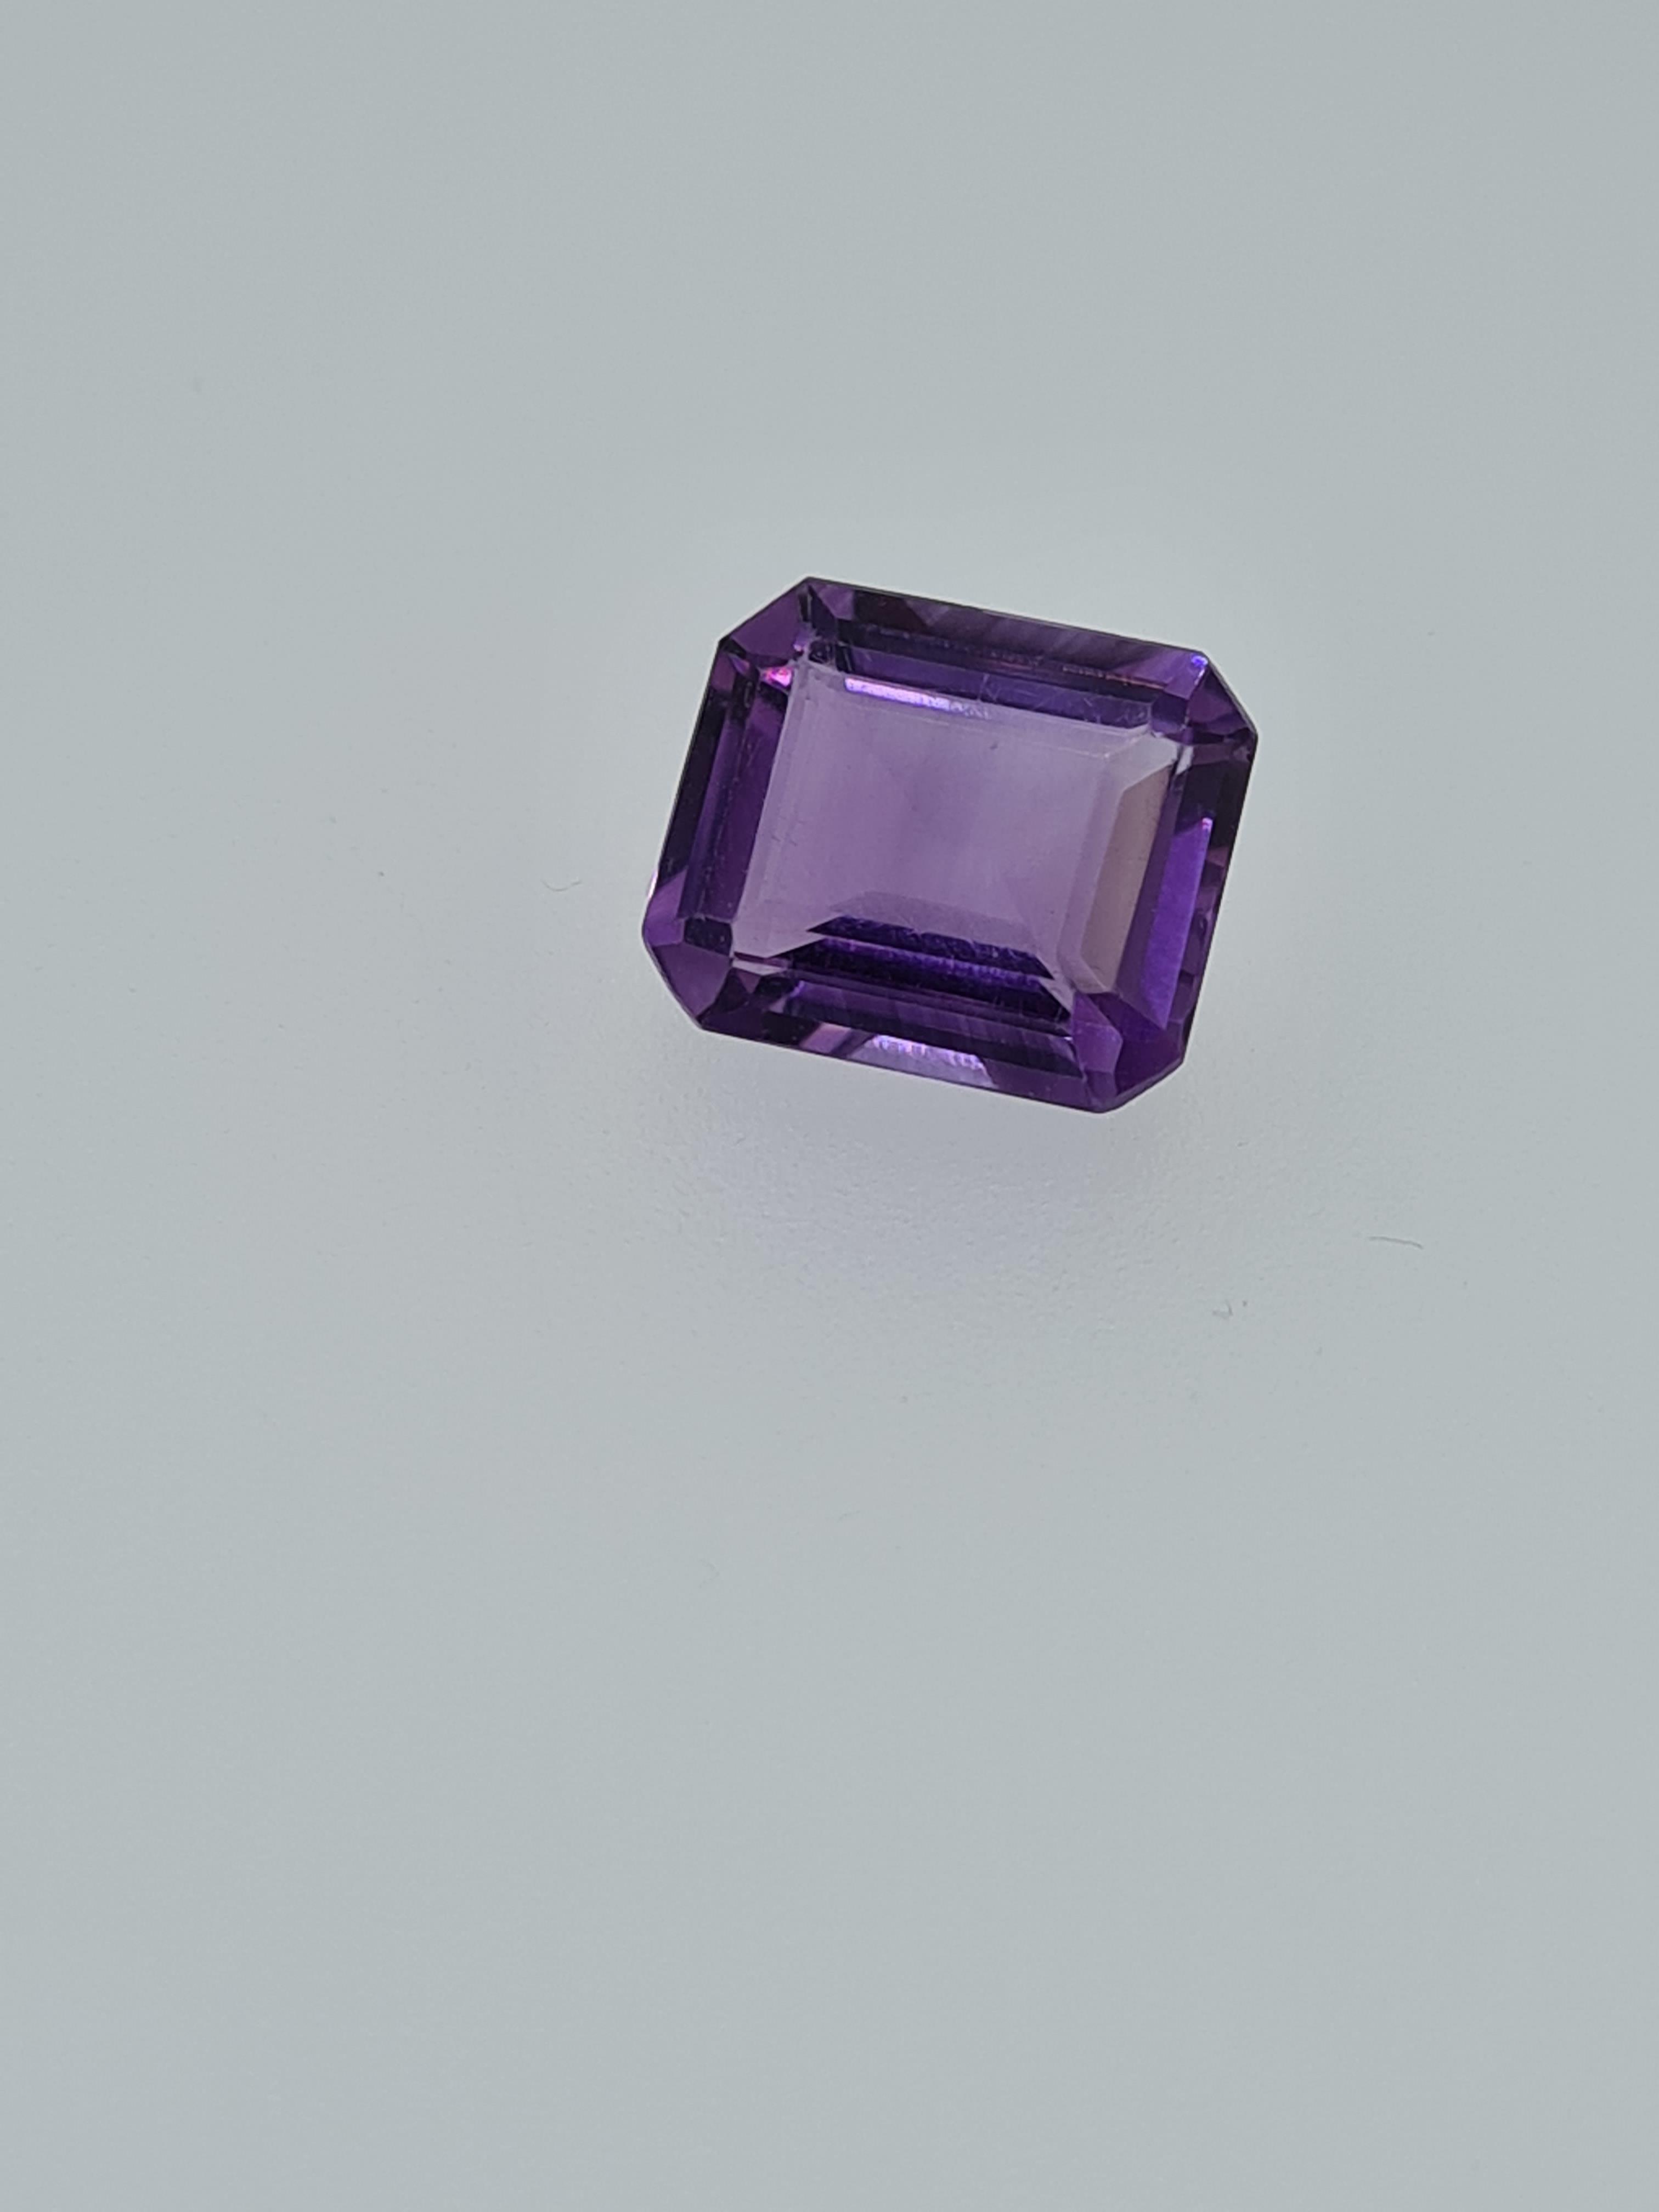 Amethyst step cut gem stone - Image 5 of 5